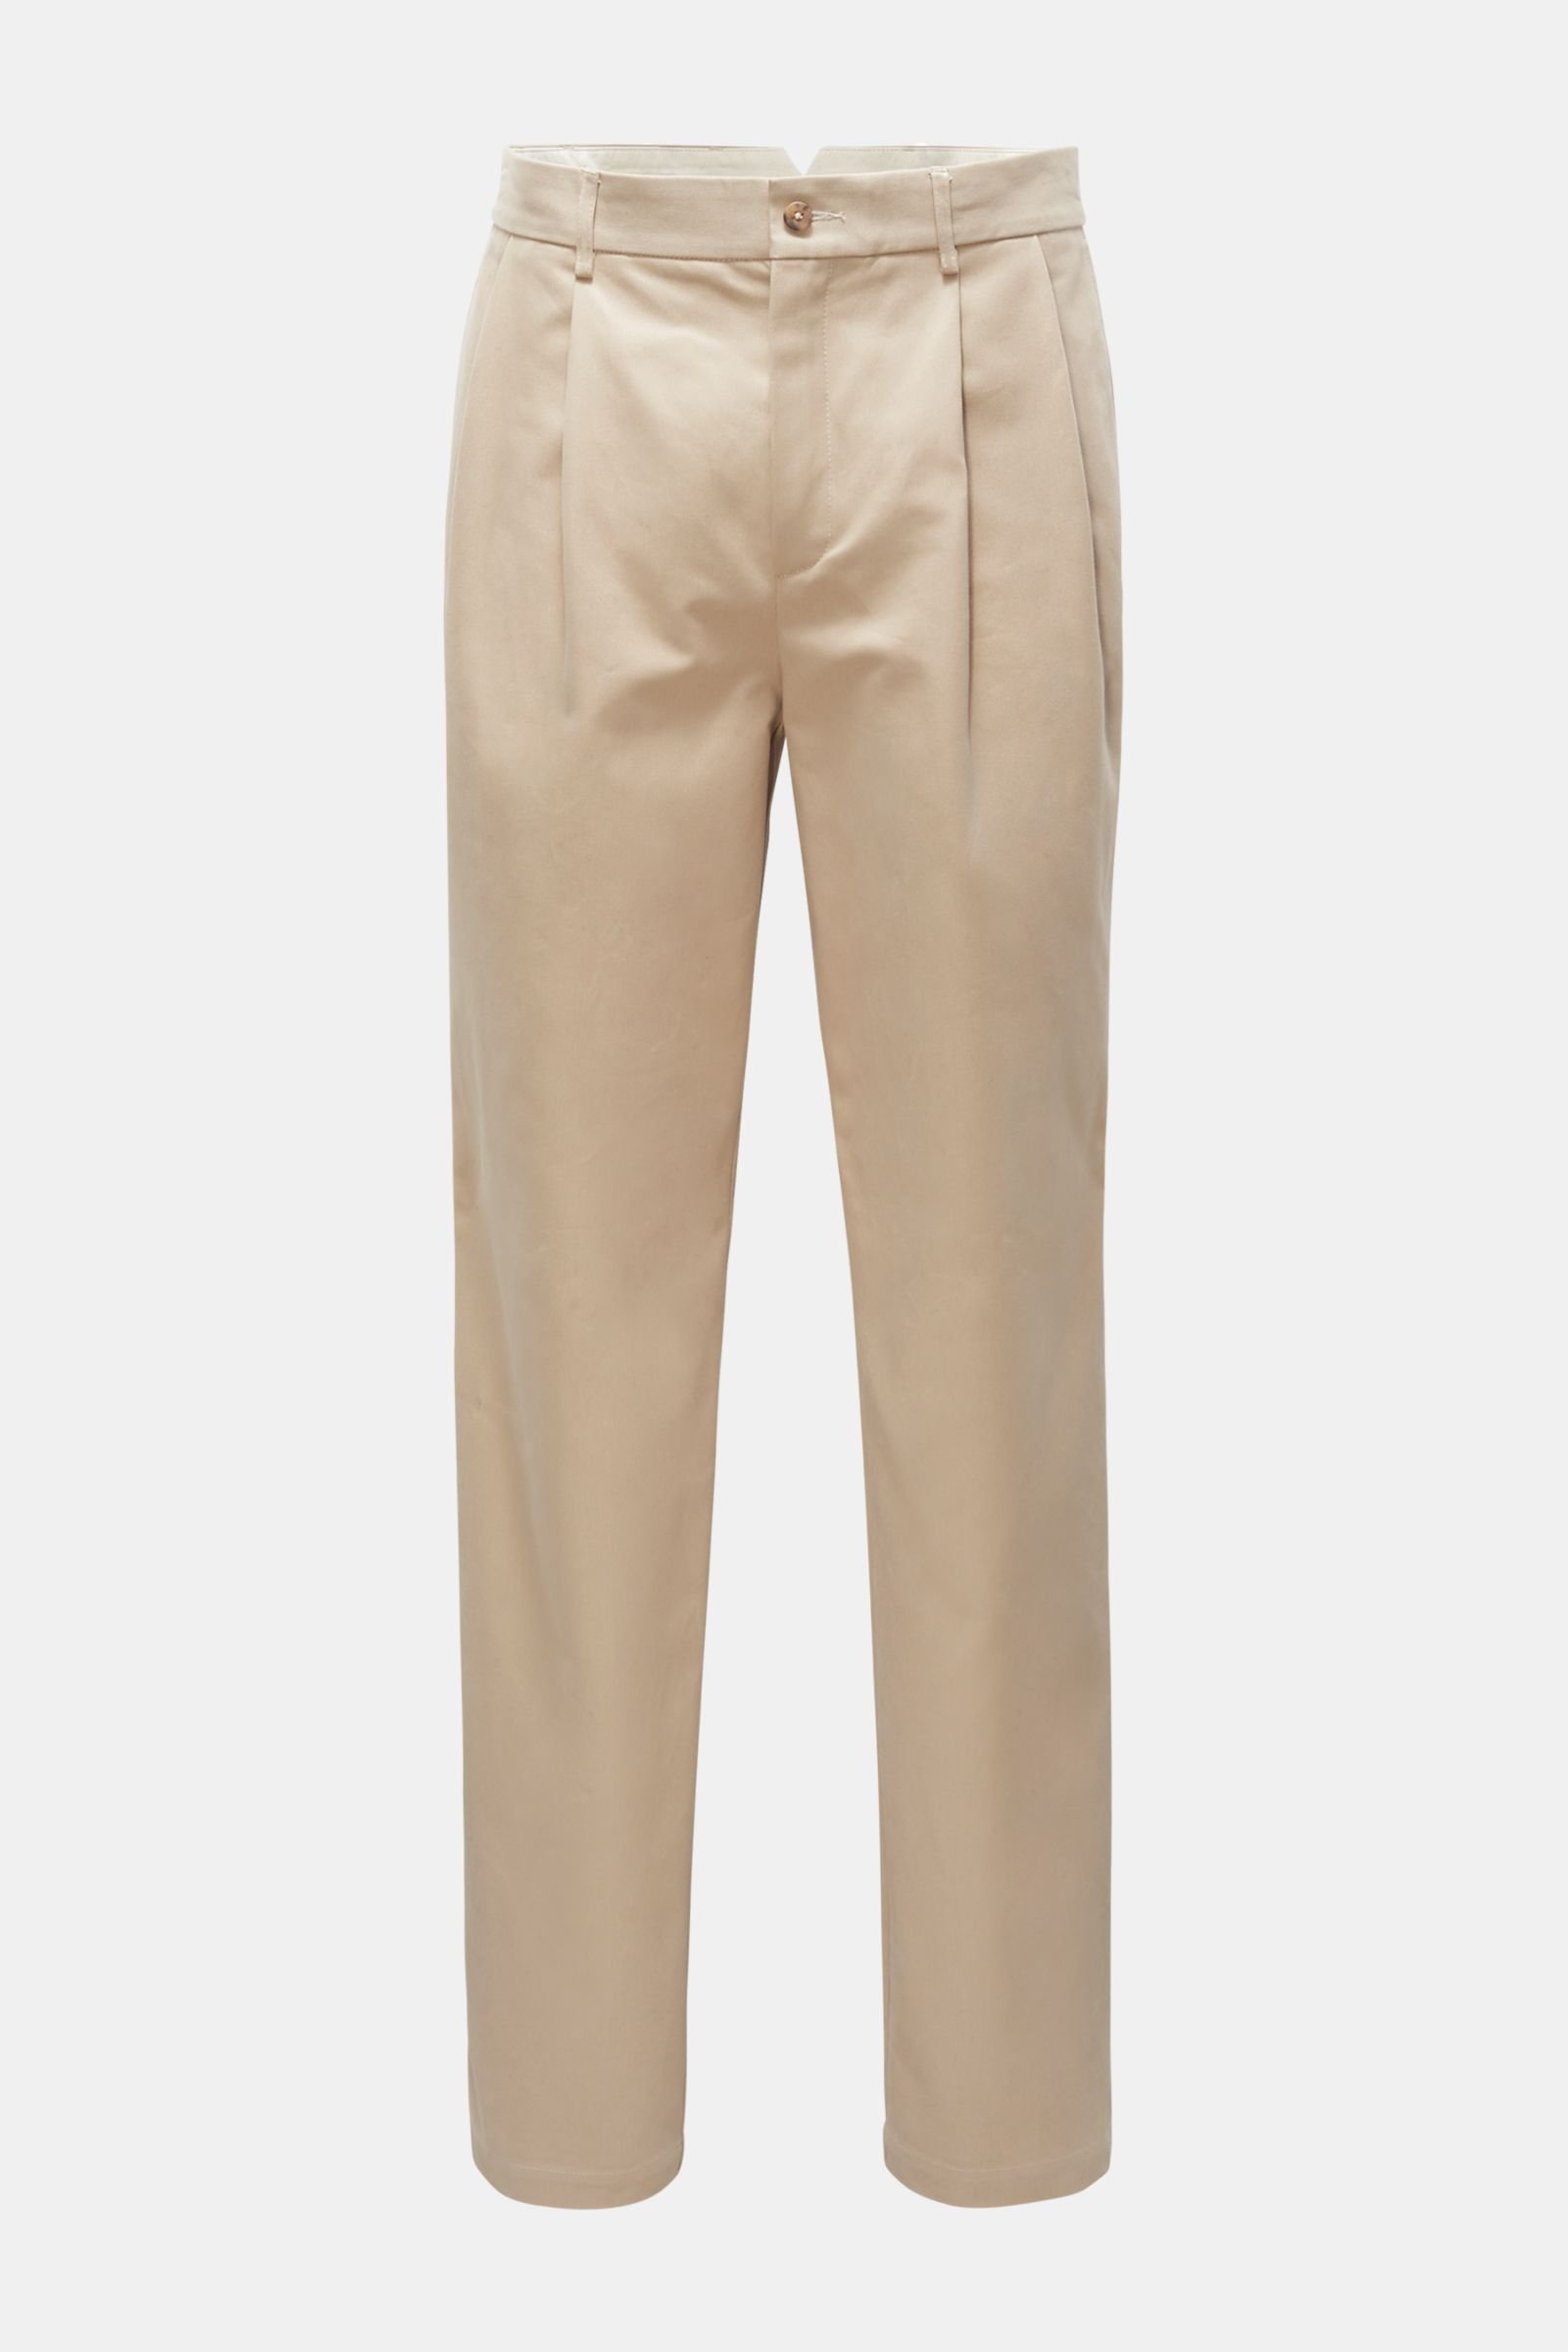 DE BONNE FACTURE trousers 'Painter Trousers' beige | BRAUN Hamburg